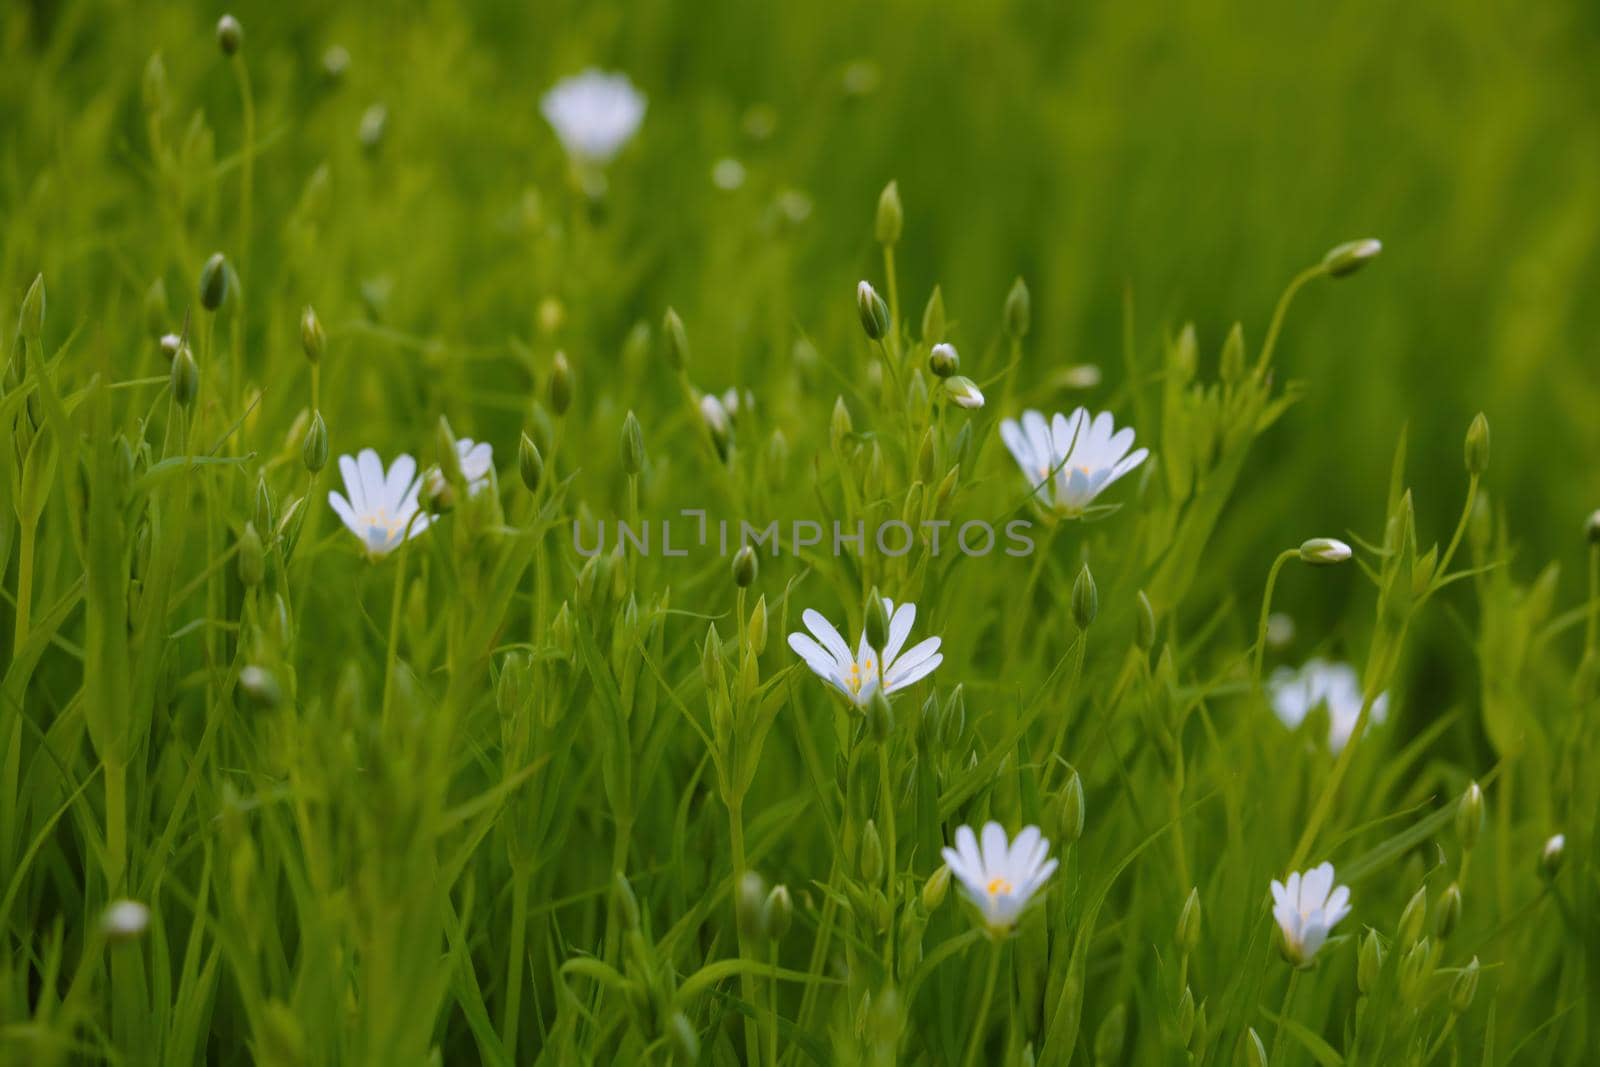 Beautiful flowering wildflowers in summer or spring. by kip02kas